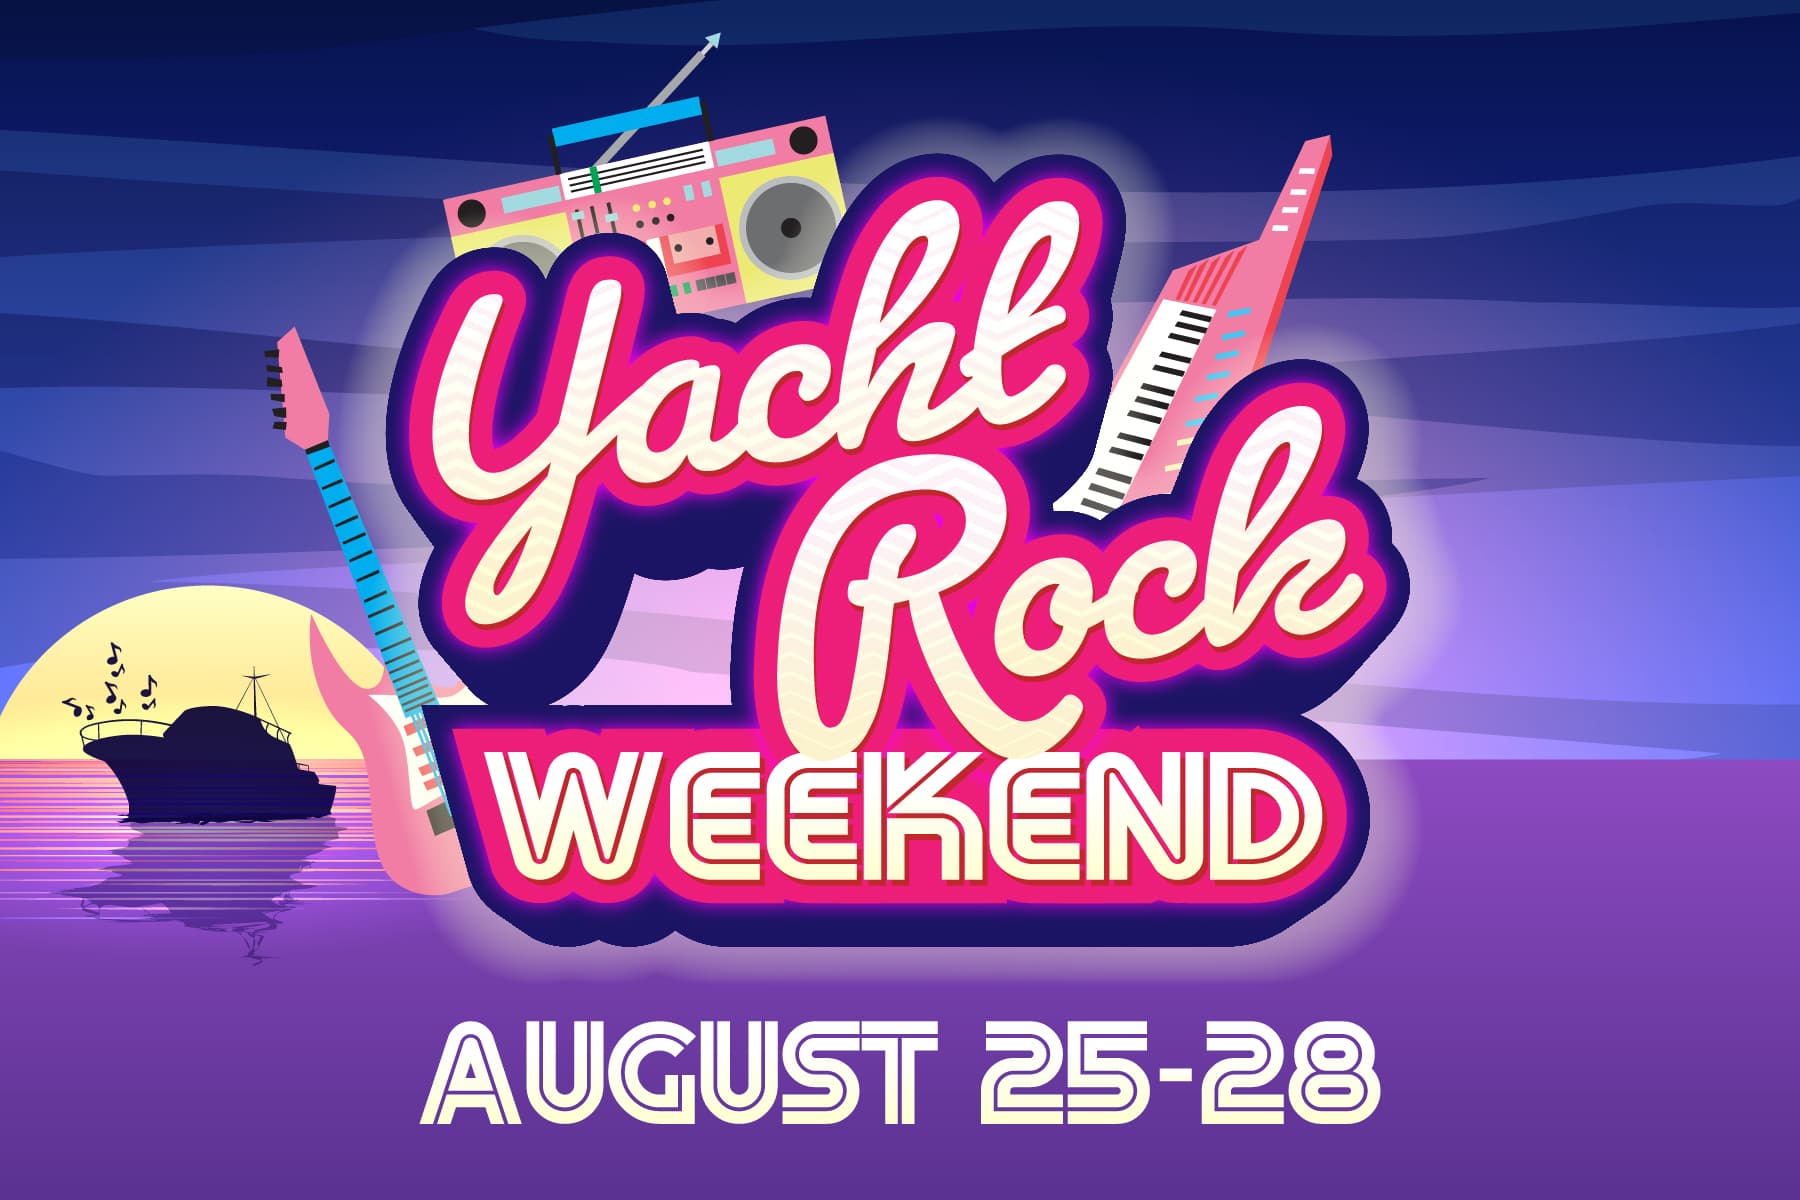 yacht rock weekend august 25-28